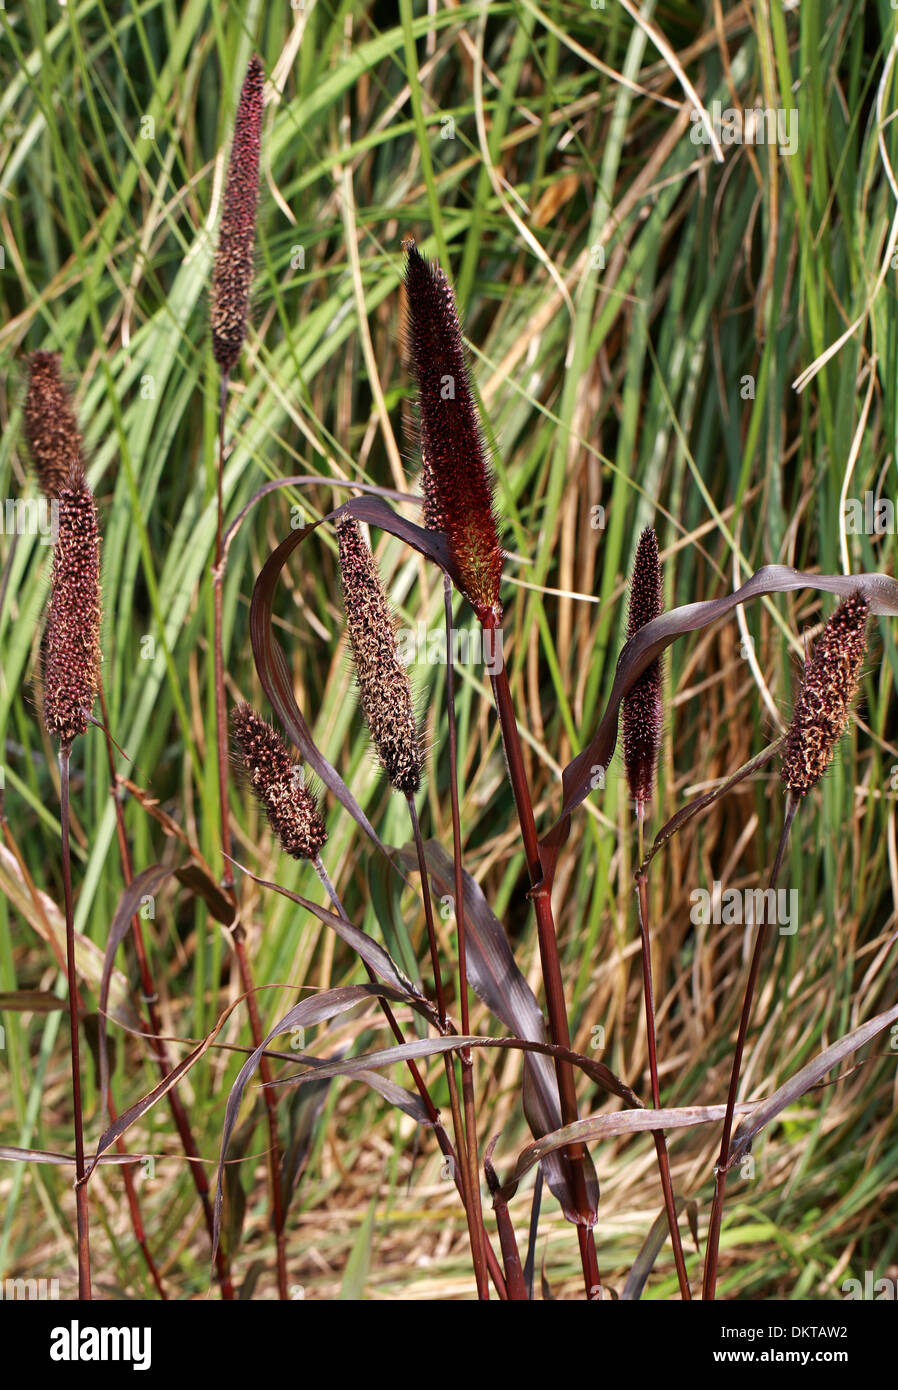 Zier-Hirse, Black Leaf Hirse, Pearl Millet, Lampenputzergras Glaucum, Poaceae. Ein rotes Ziergras. Afrika, Indien. Stockfoto